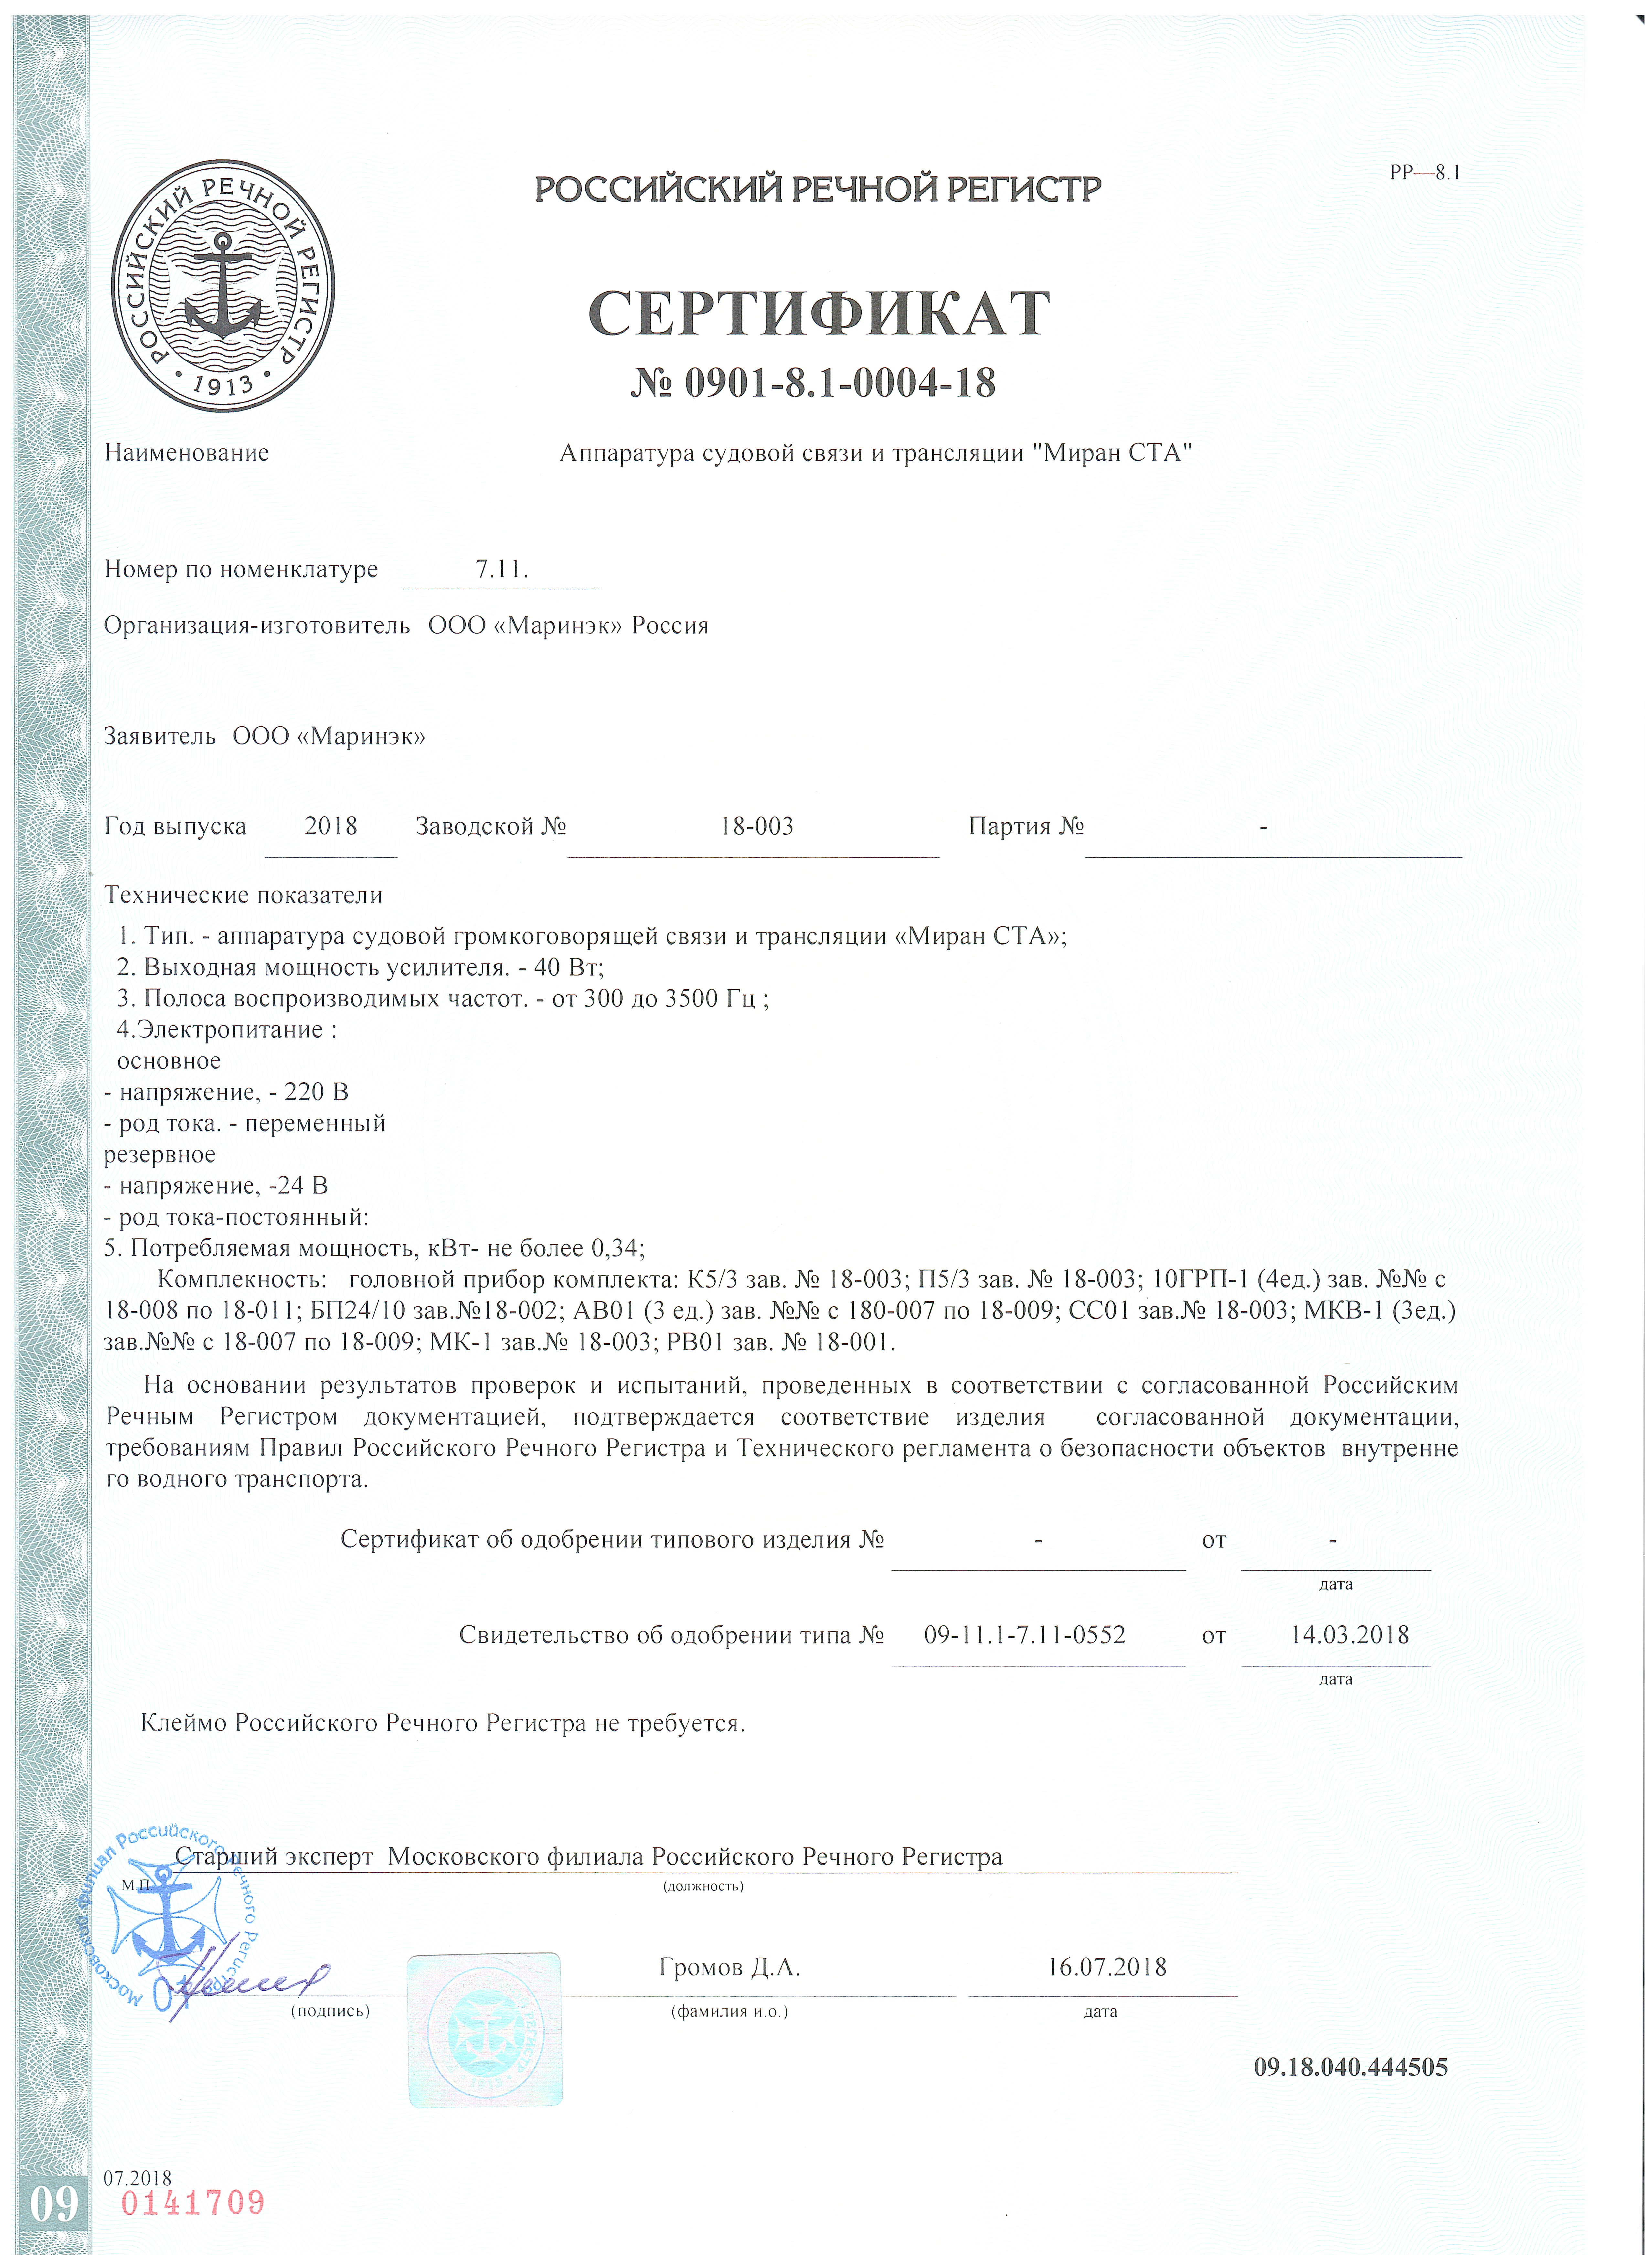 Казначейство россии сертификаты